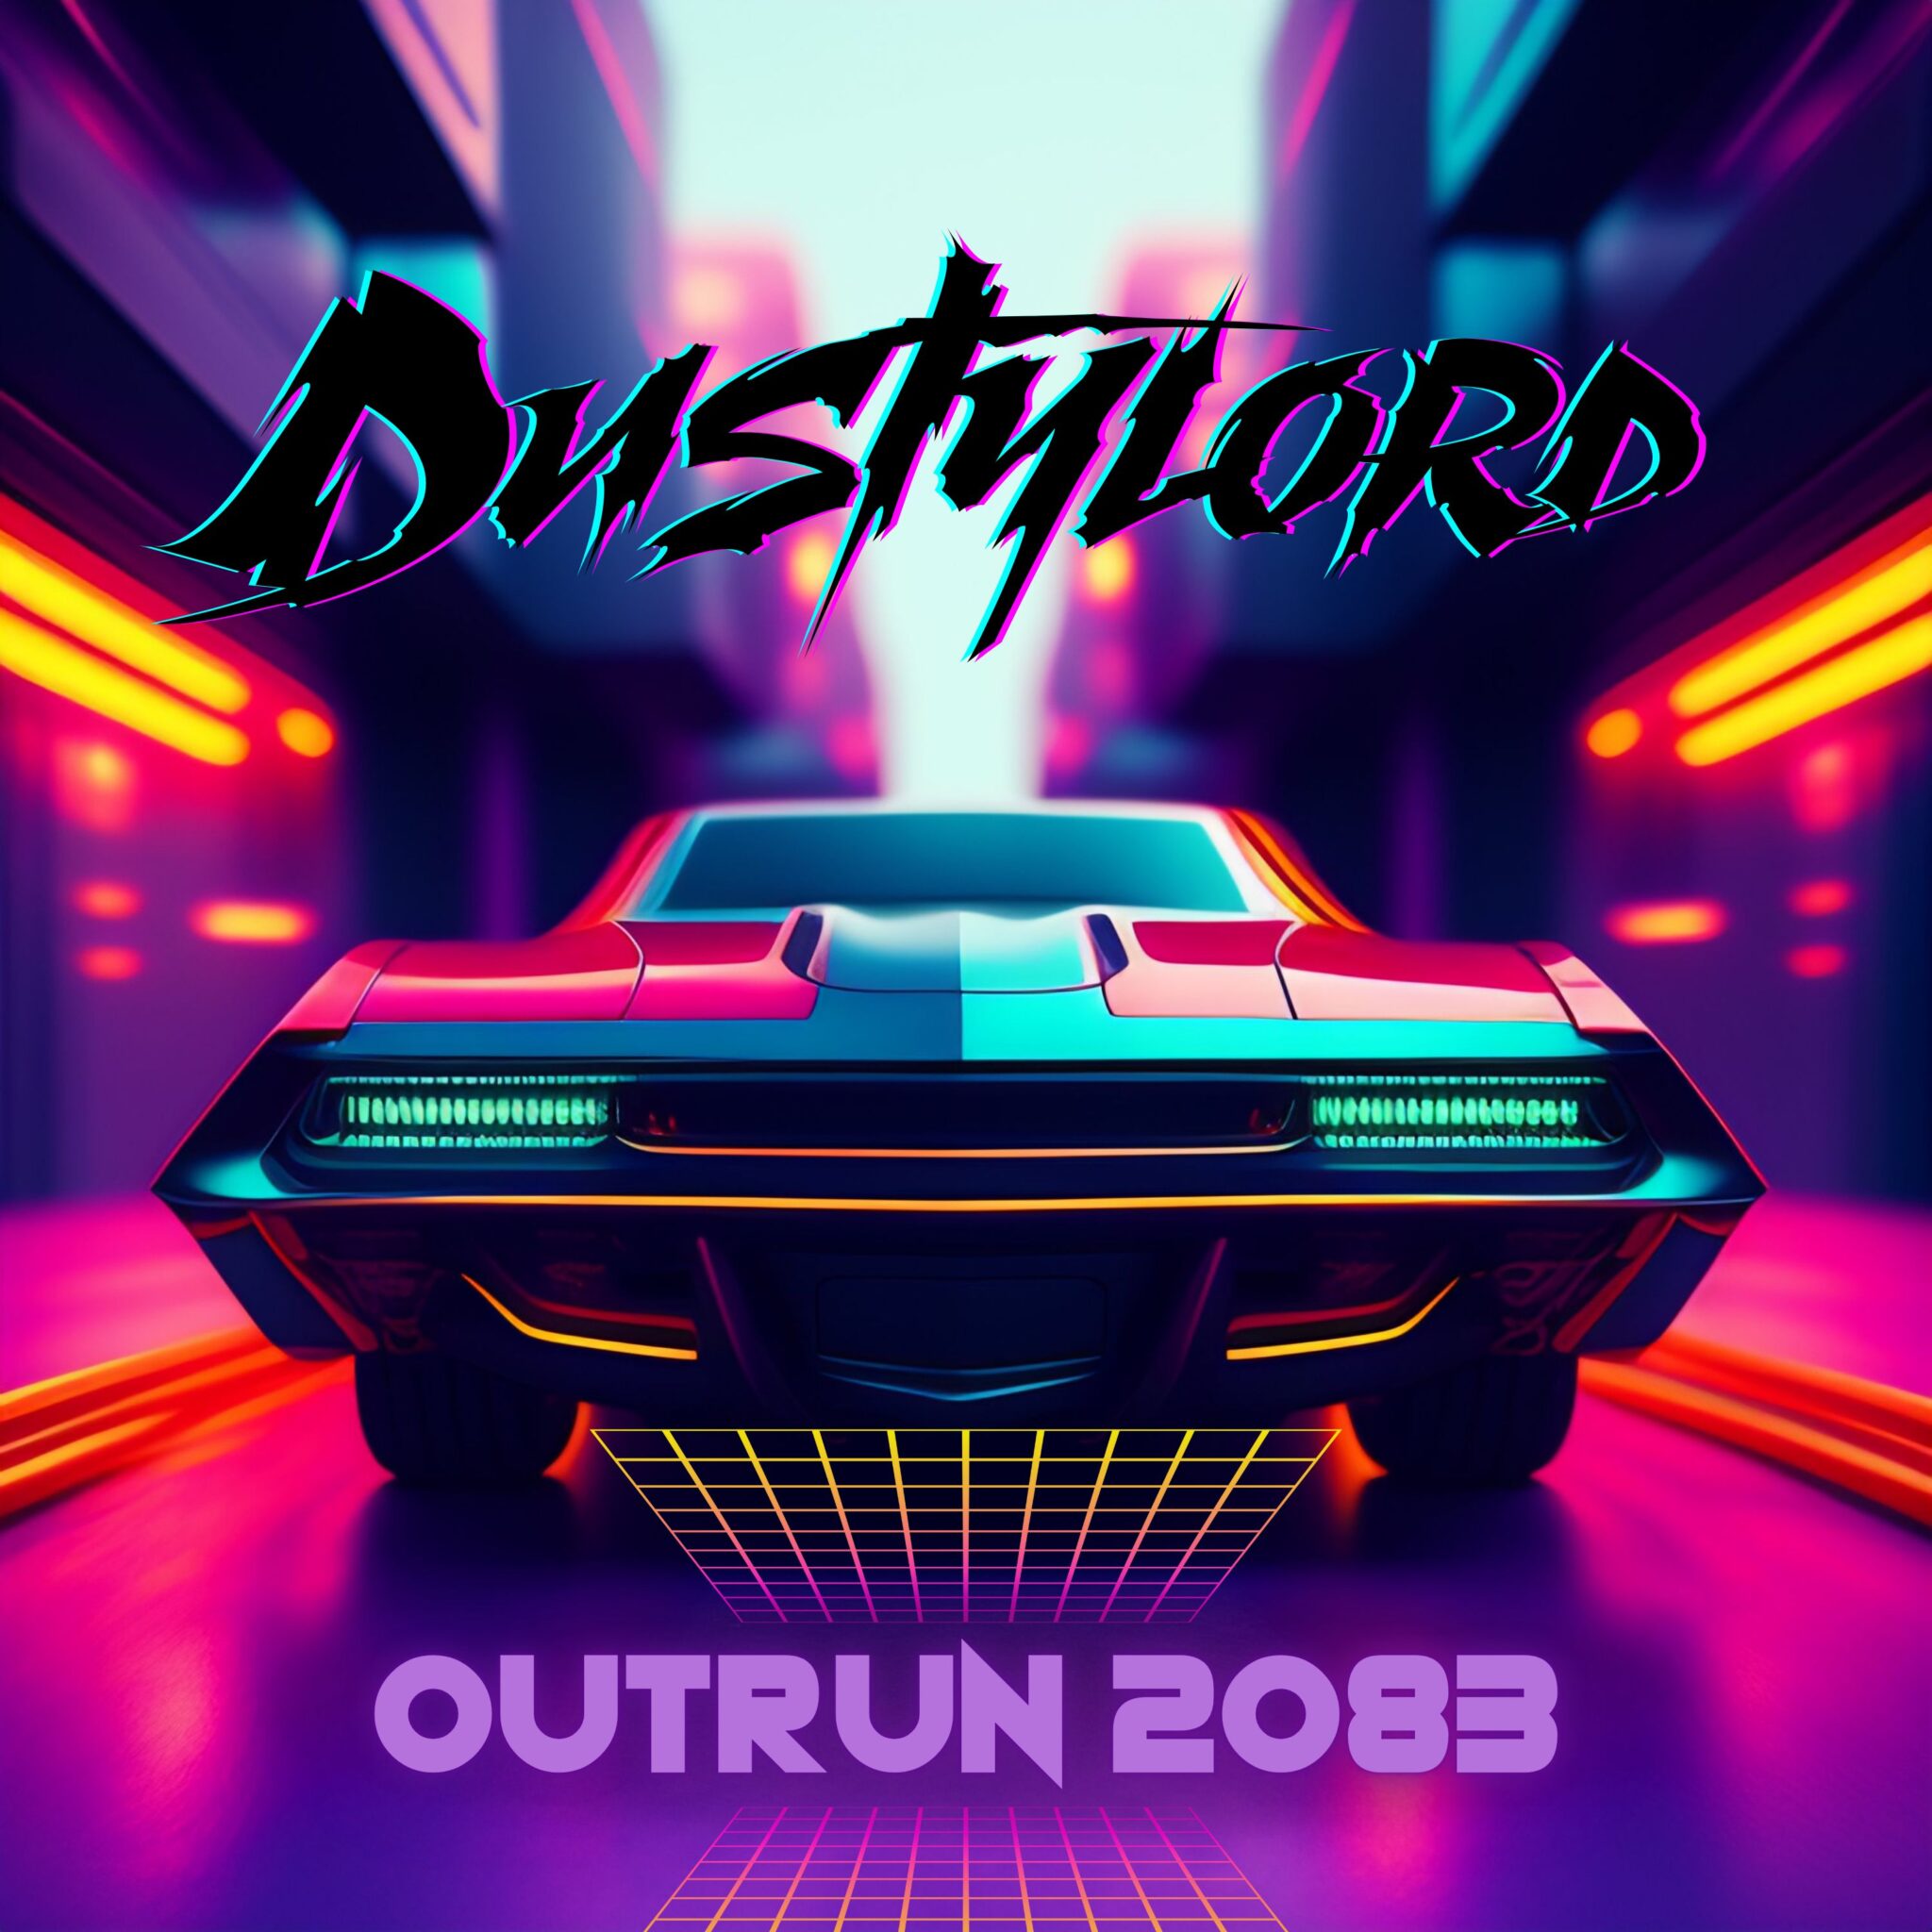 Outrun 2083 : La pépite synthwave de Dustylord